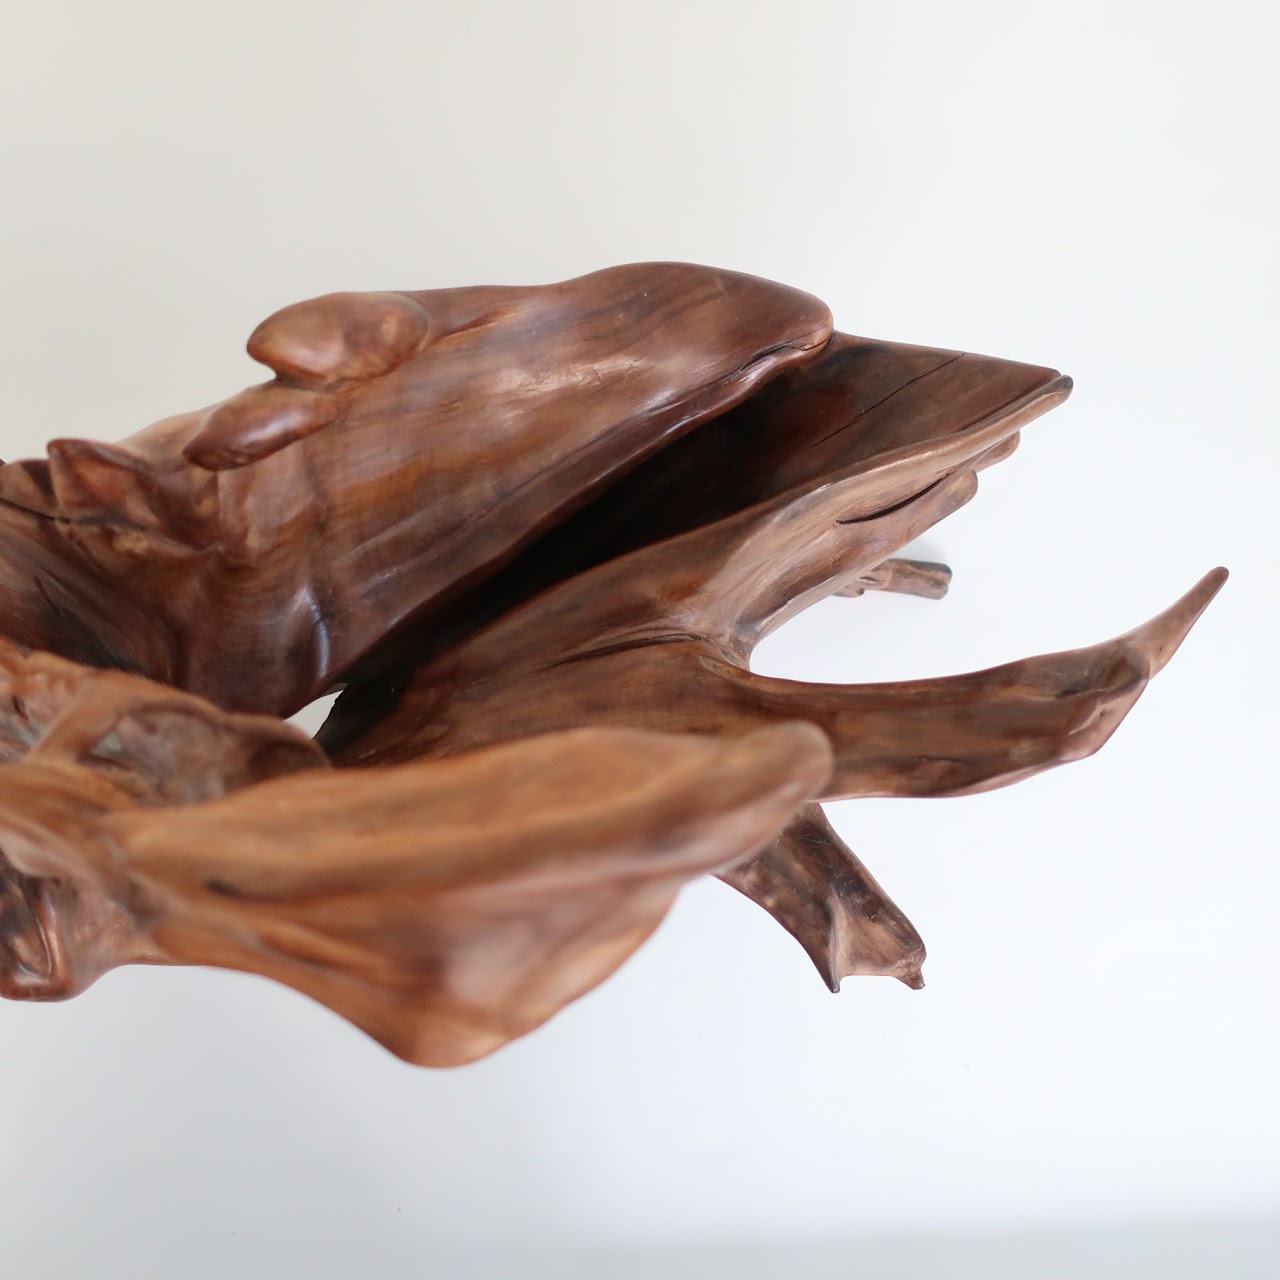 Don B. Signed Sculptural Driftwood